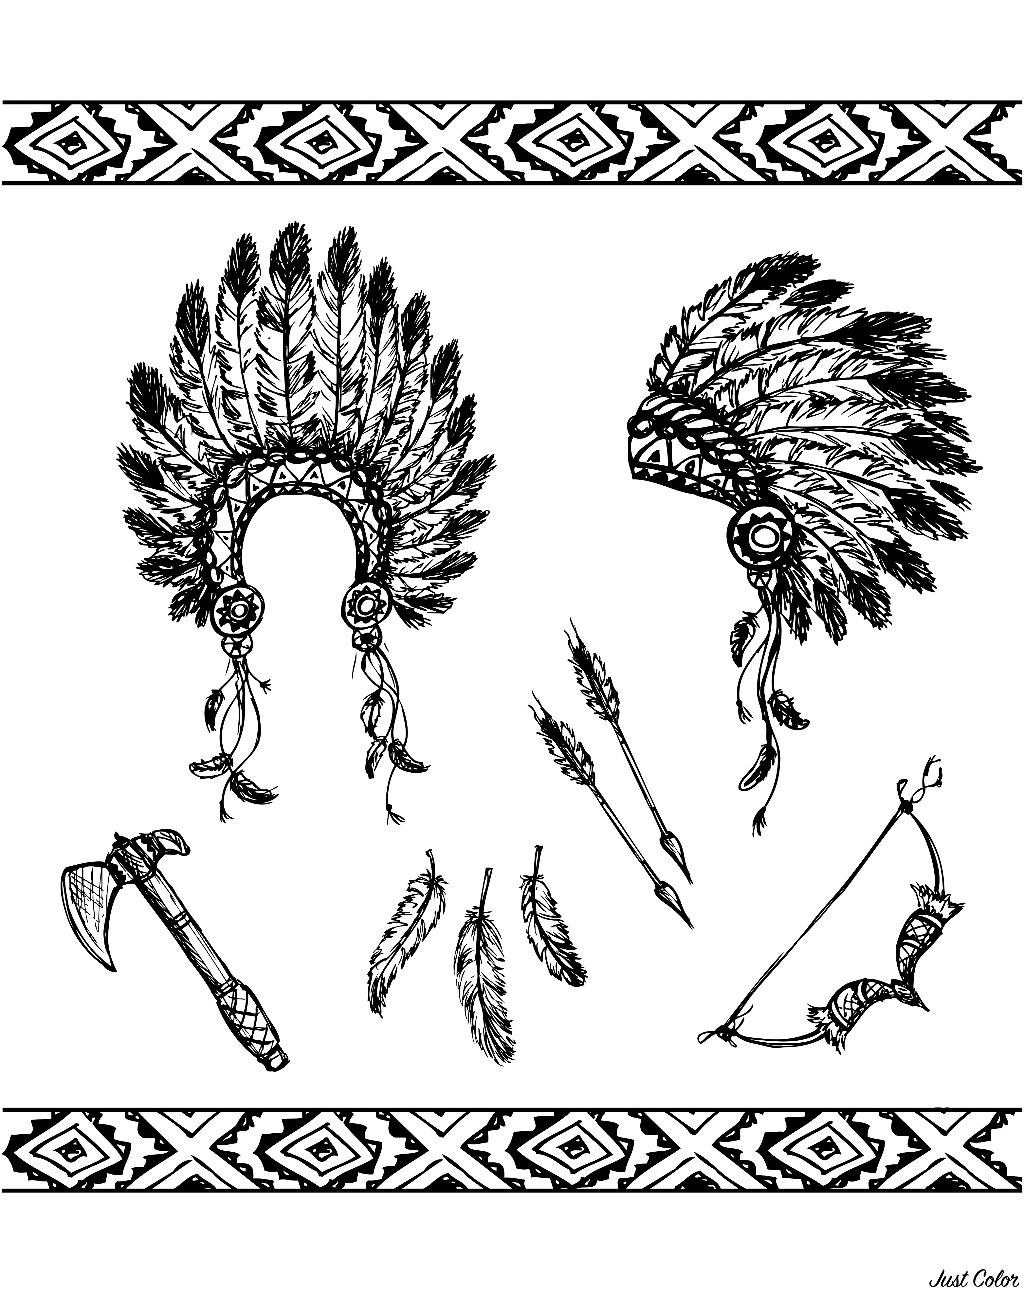 Les symboles des Indiens : la coiffe à plumes, la hache, l'archer et les flèches ...